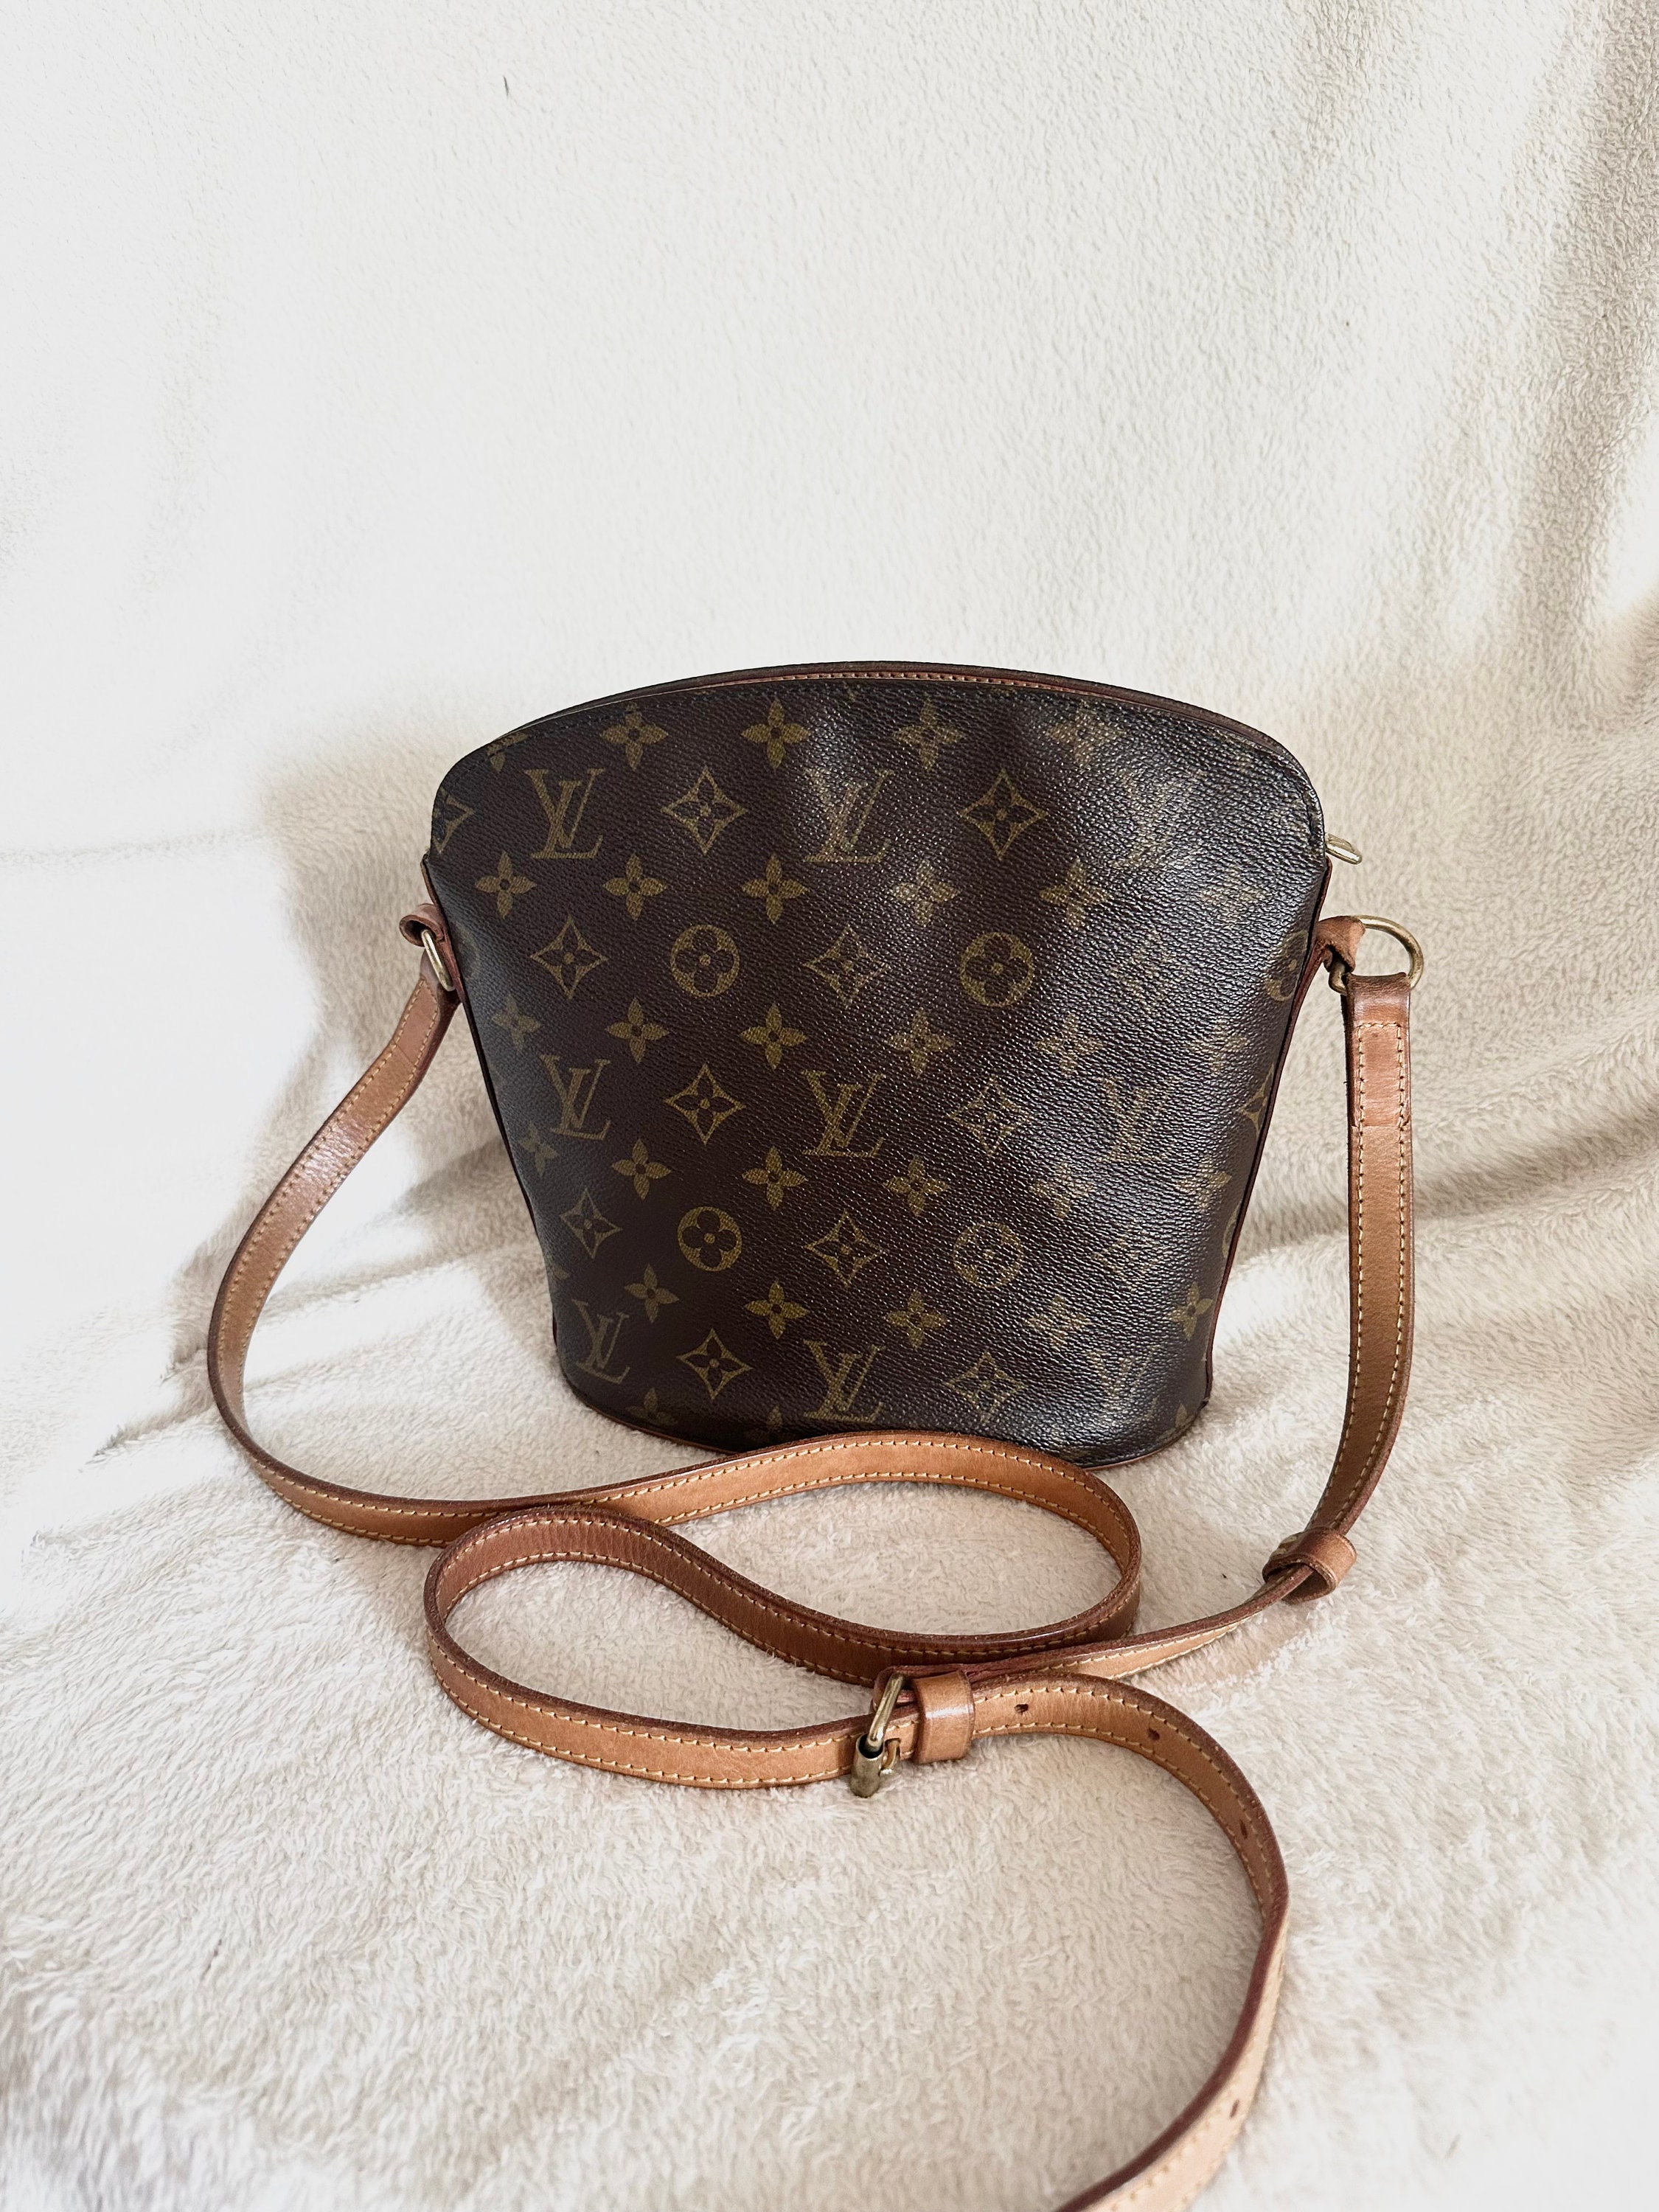 Louis Vuitton Vintage Raspail Shoulder bag 🎉 SALE!! Limited time!